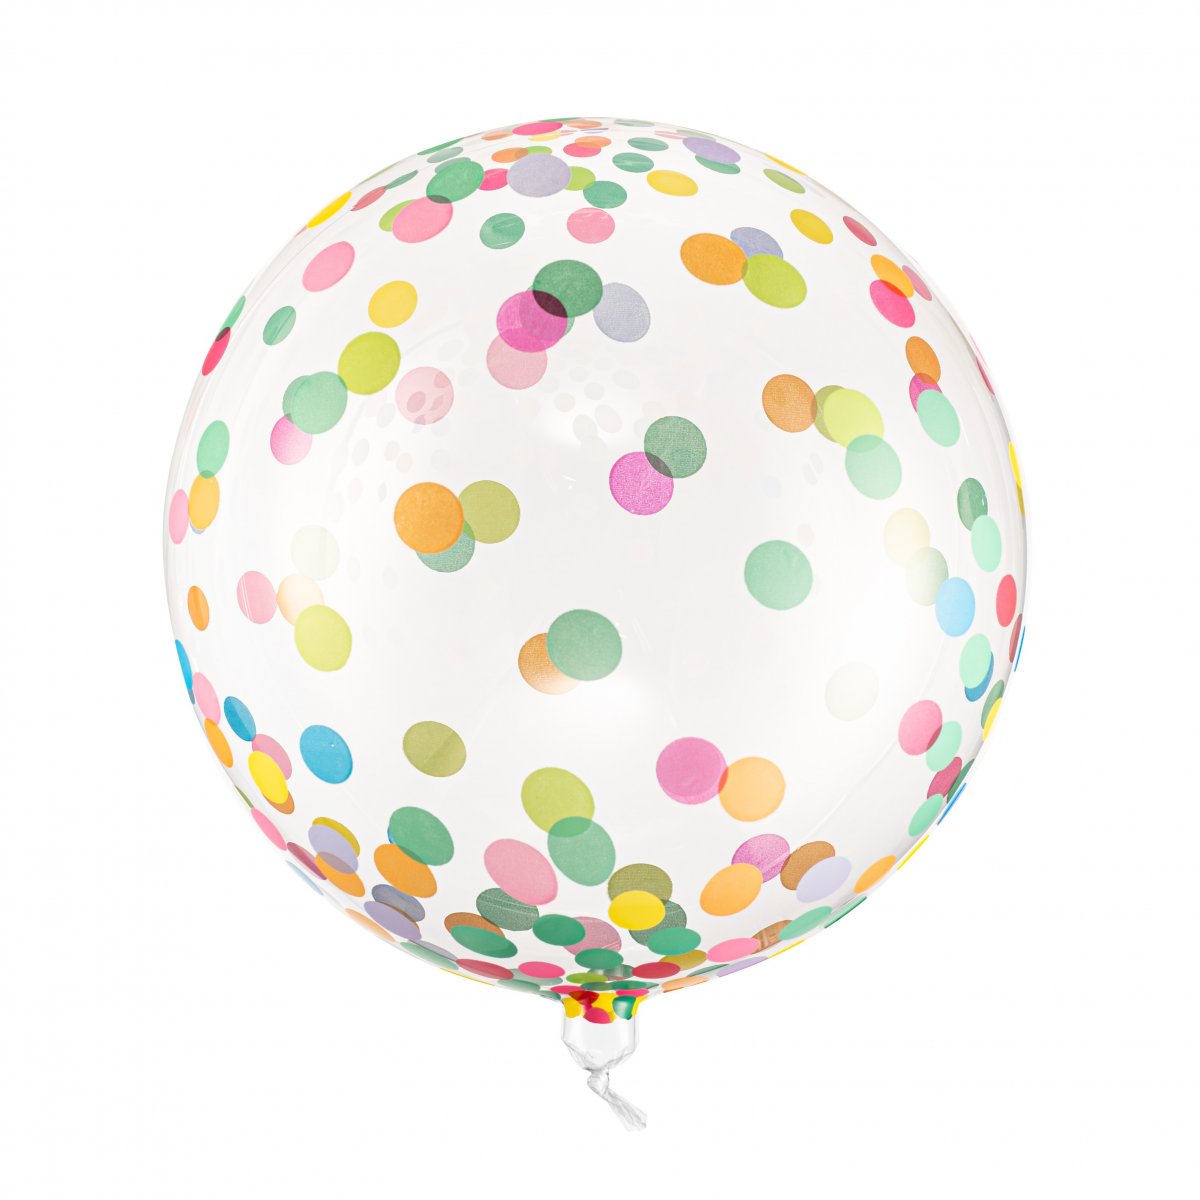 stress scaring for ikke at nævne Orbz ballon med konfettiprikker - Festpynt og dekoration